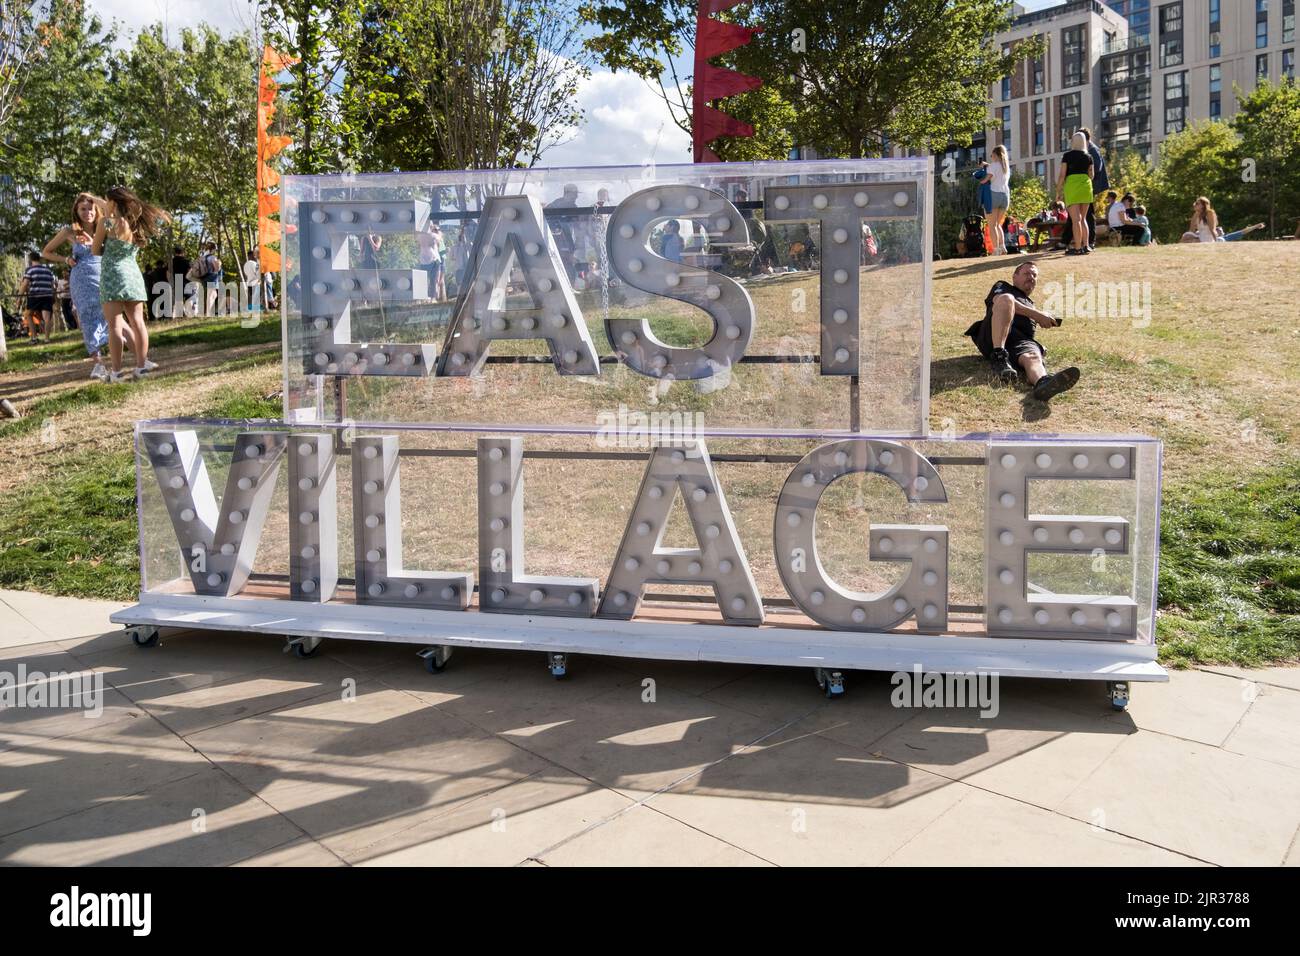 East Village Sign (Londres) dans le parc pendant la fête d'été E20 célébrant le 10 anniversaire des Jeux Olympiques de Londres 2012. Banque D'Images